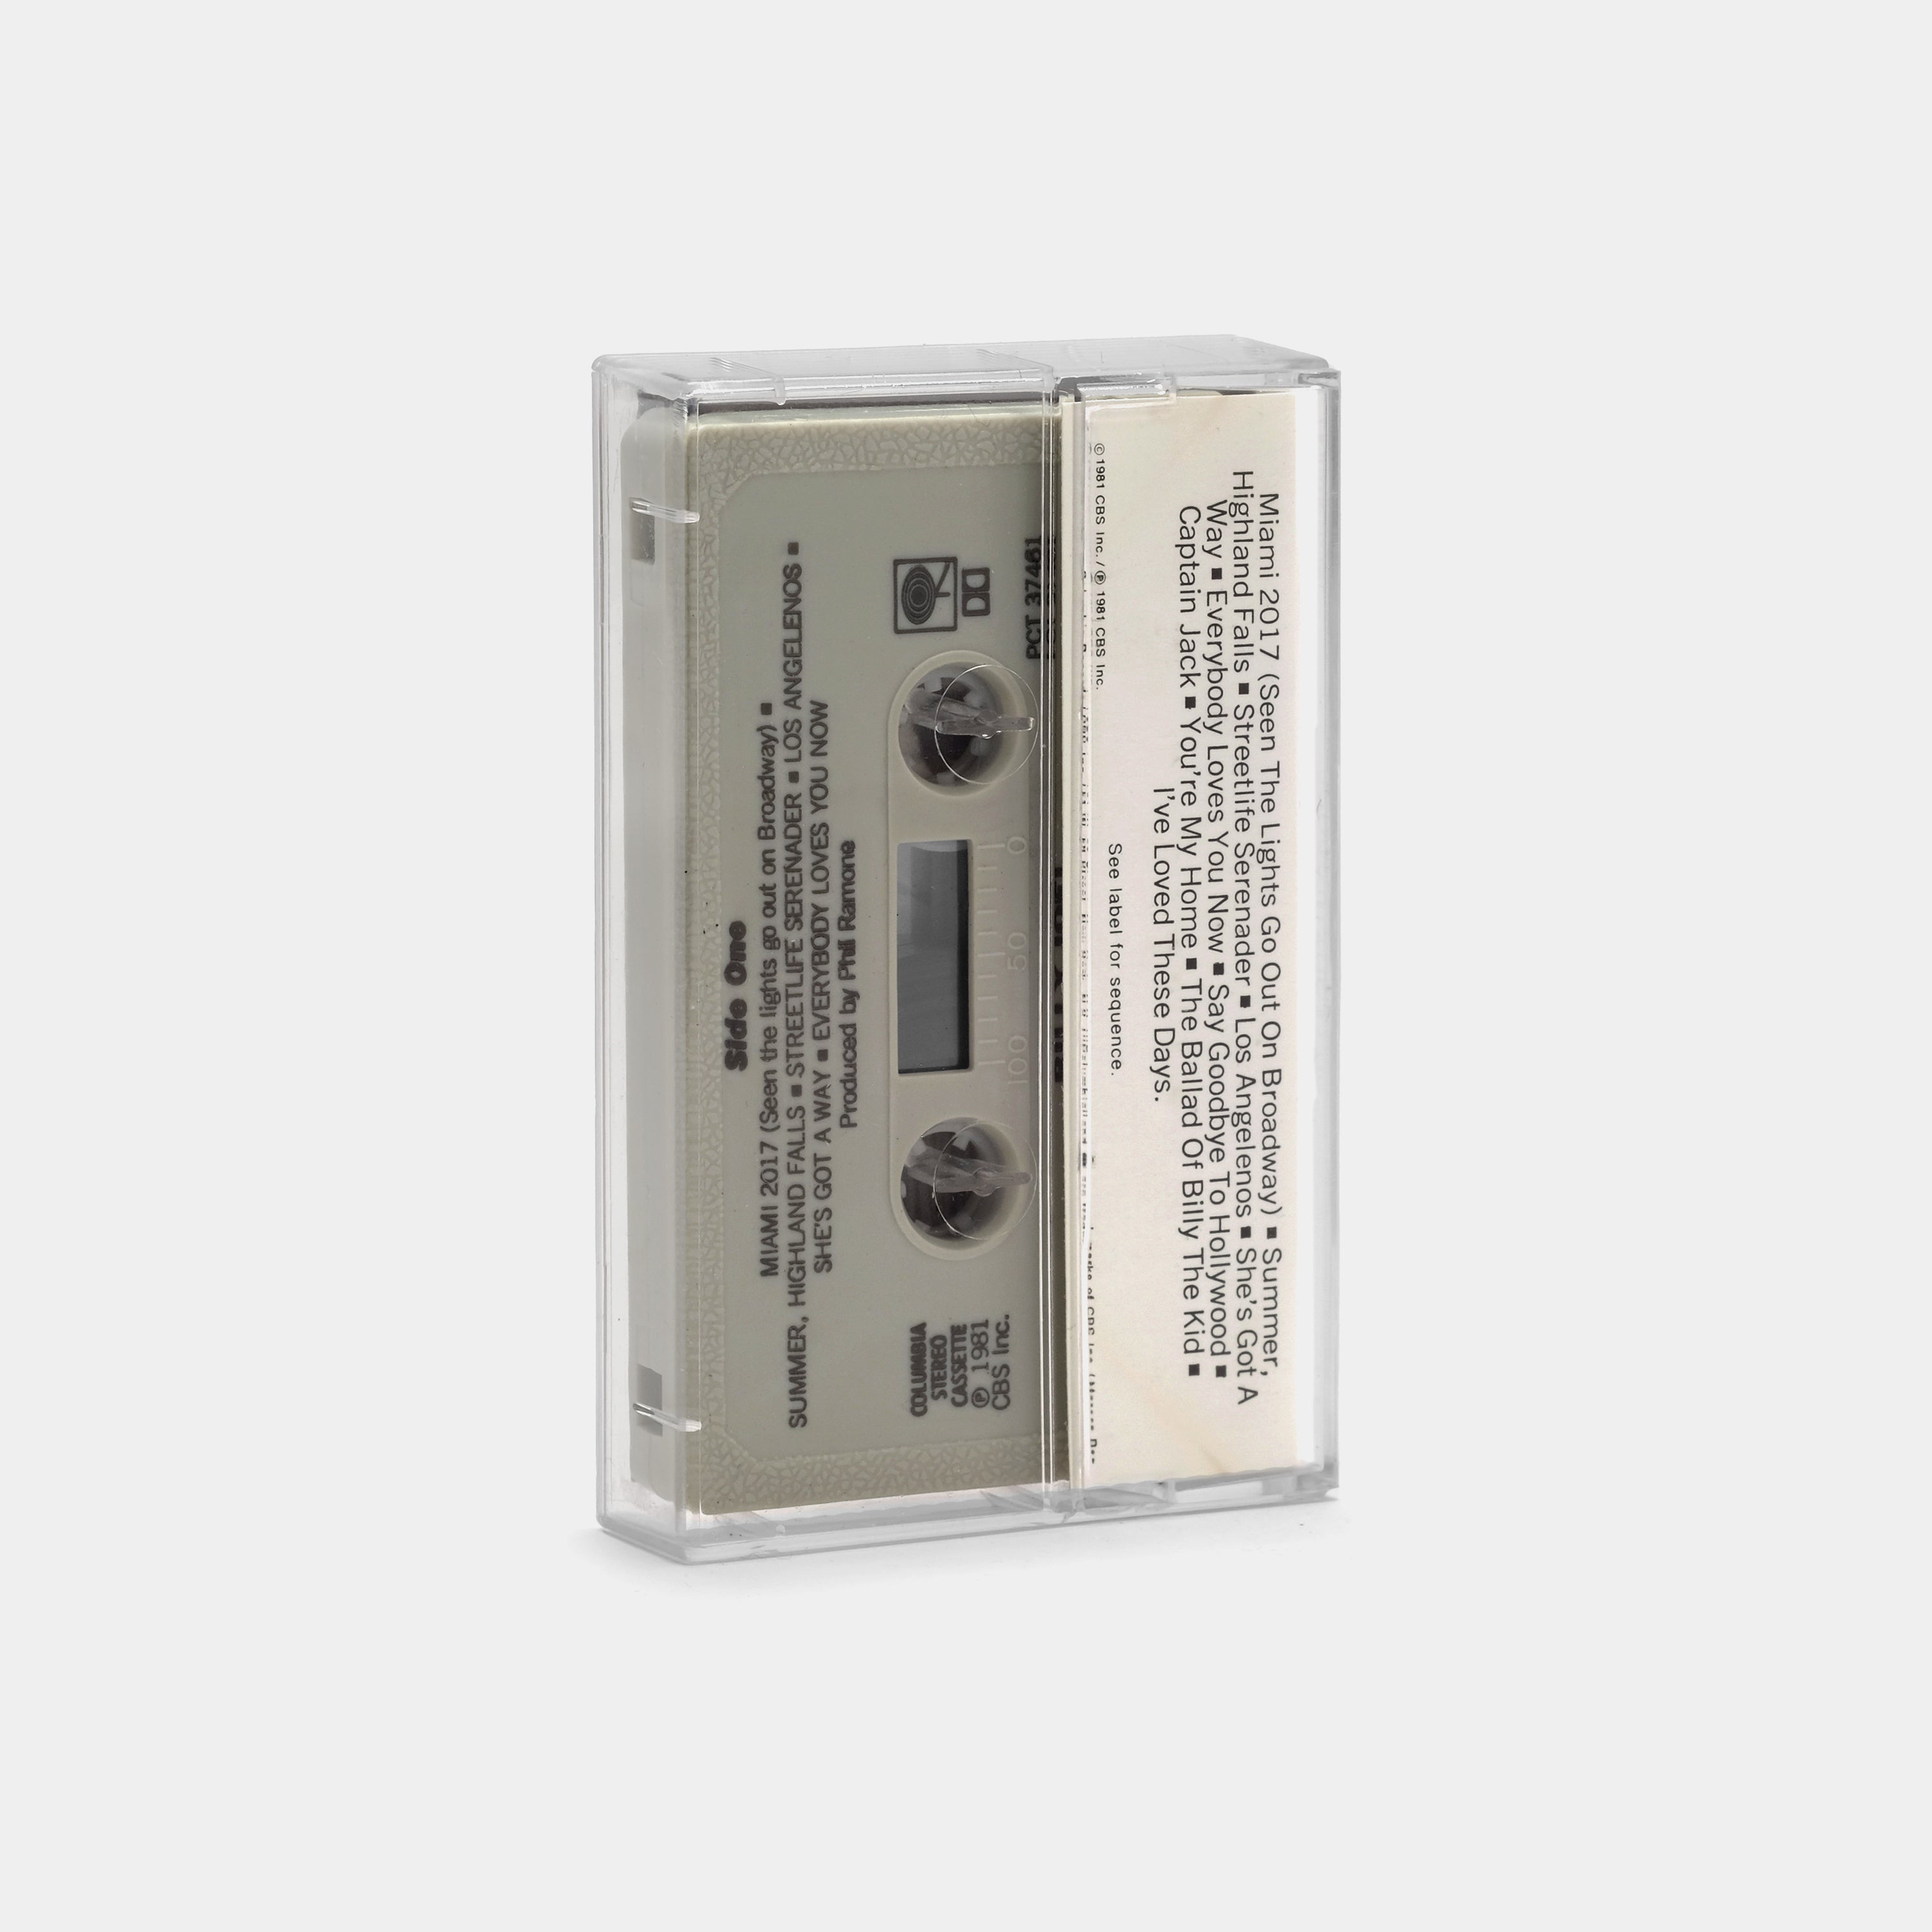 Billy Joel - Songs In The Attic Cassette Tape